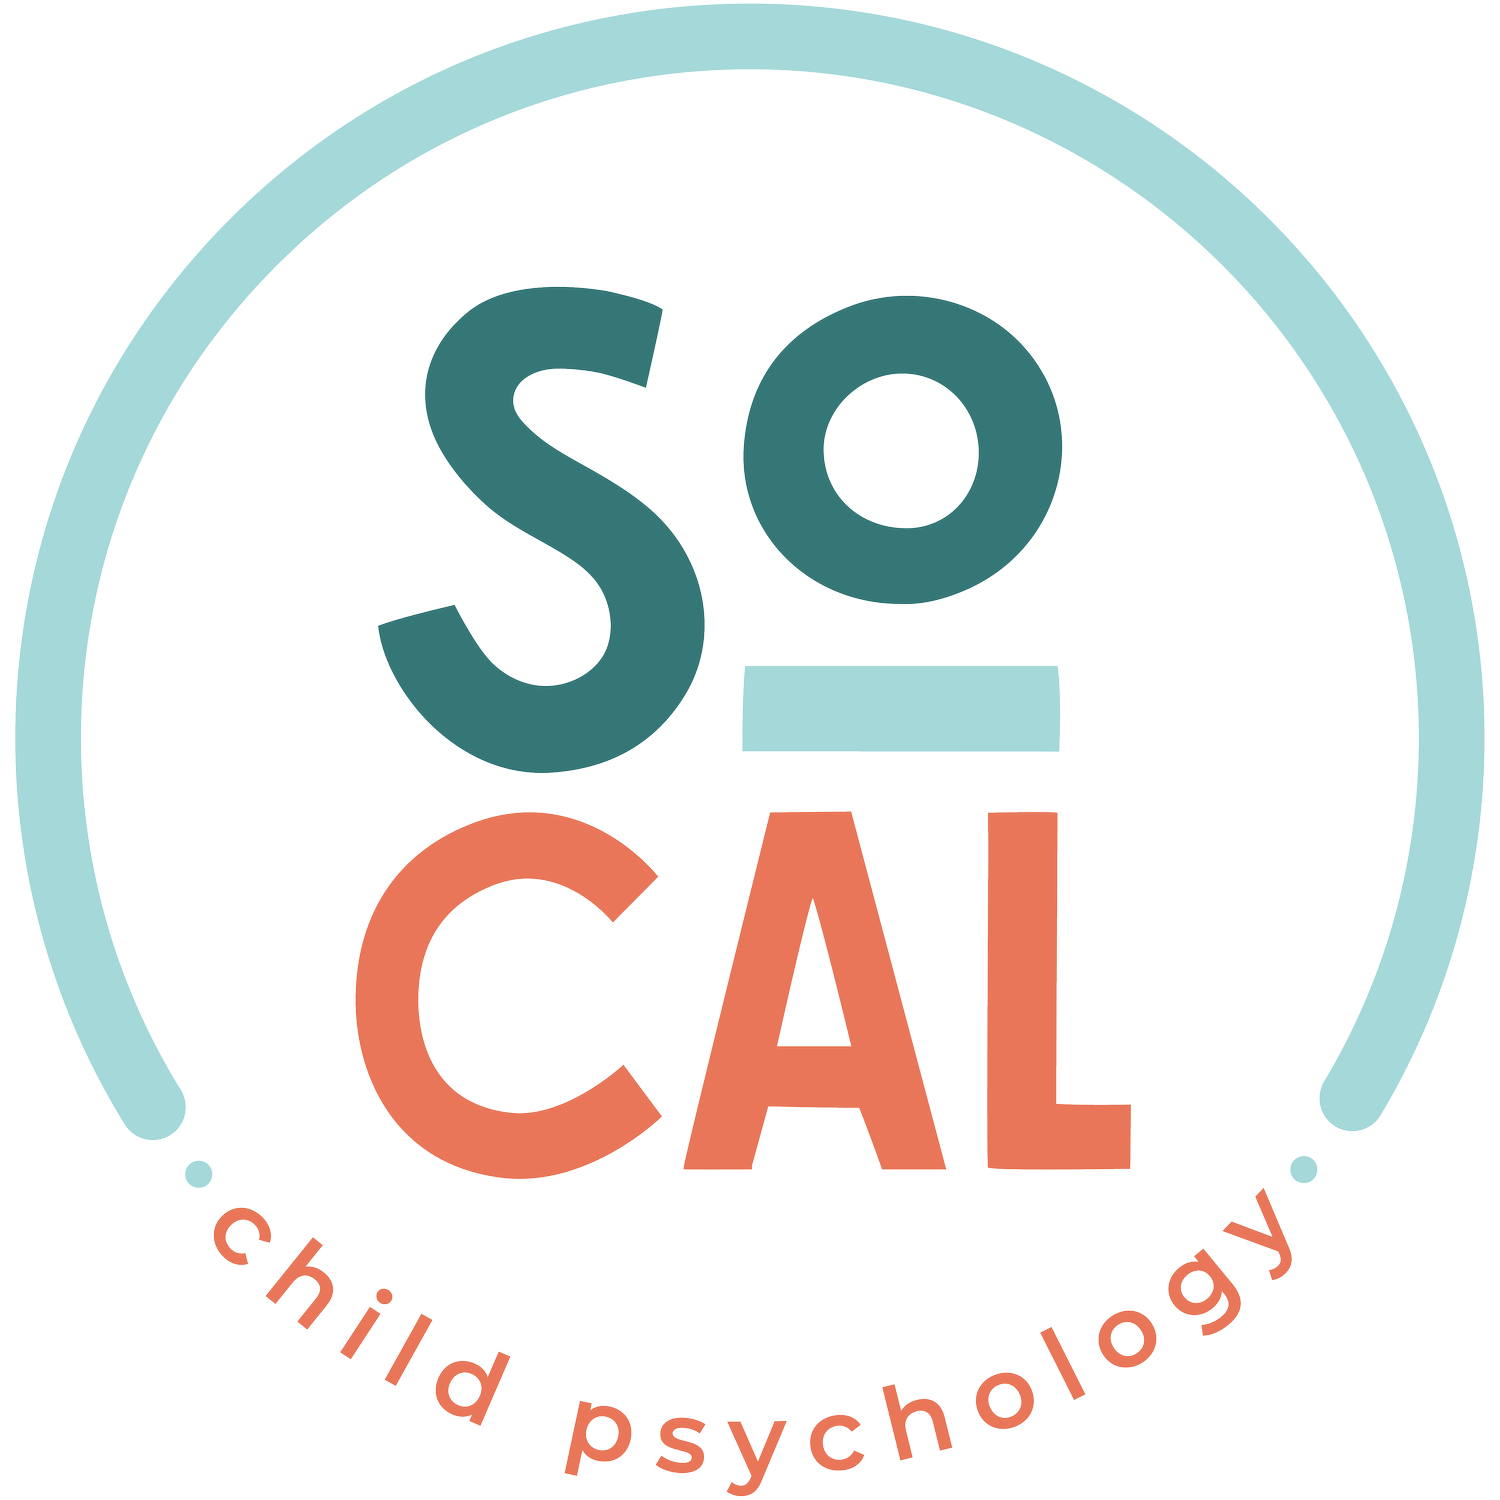 SoCal Child Psychology